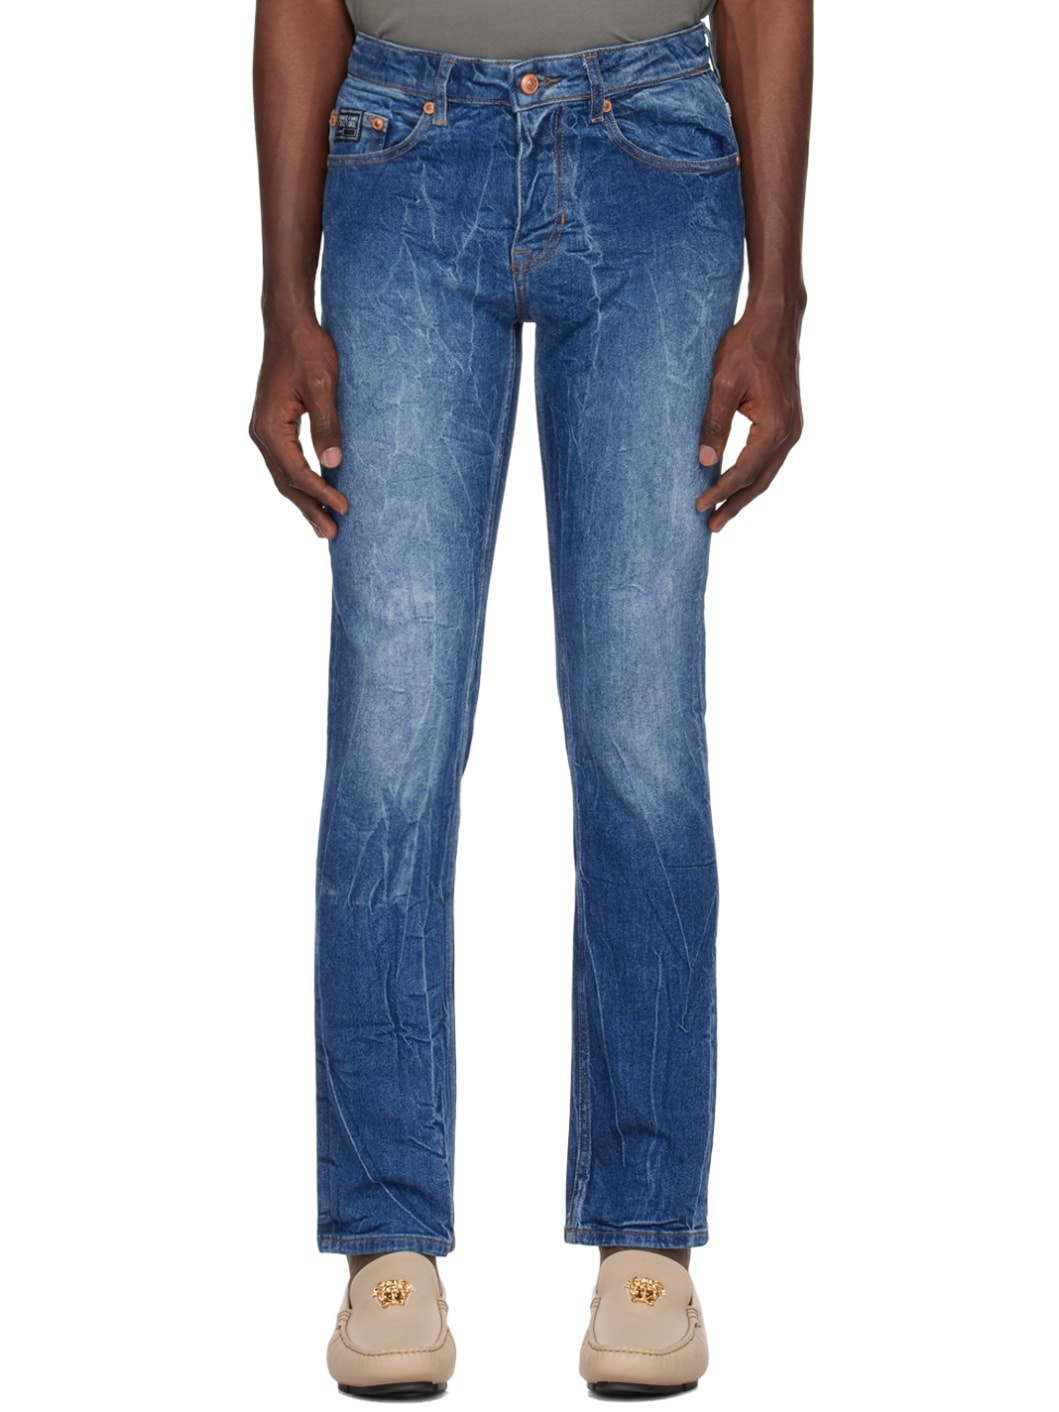 Indigo Slim-Fit Jeans - 1